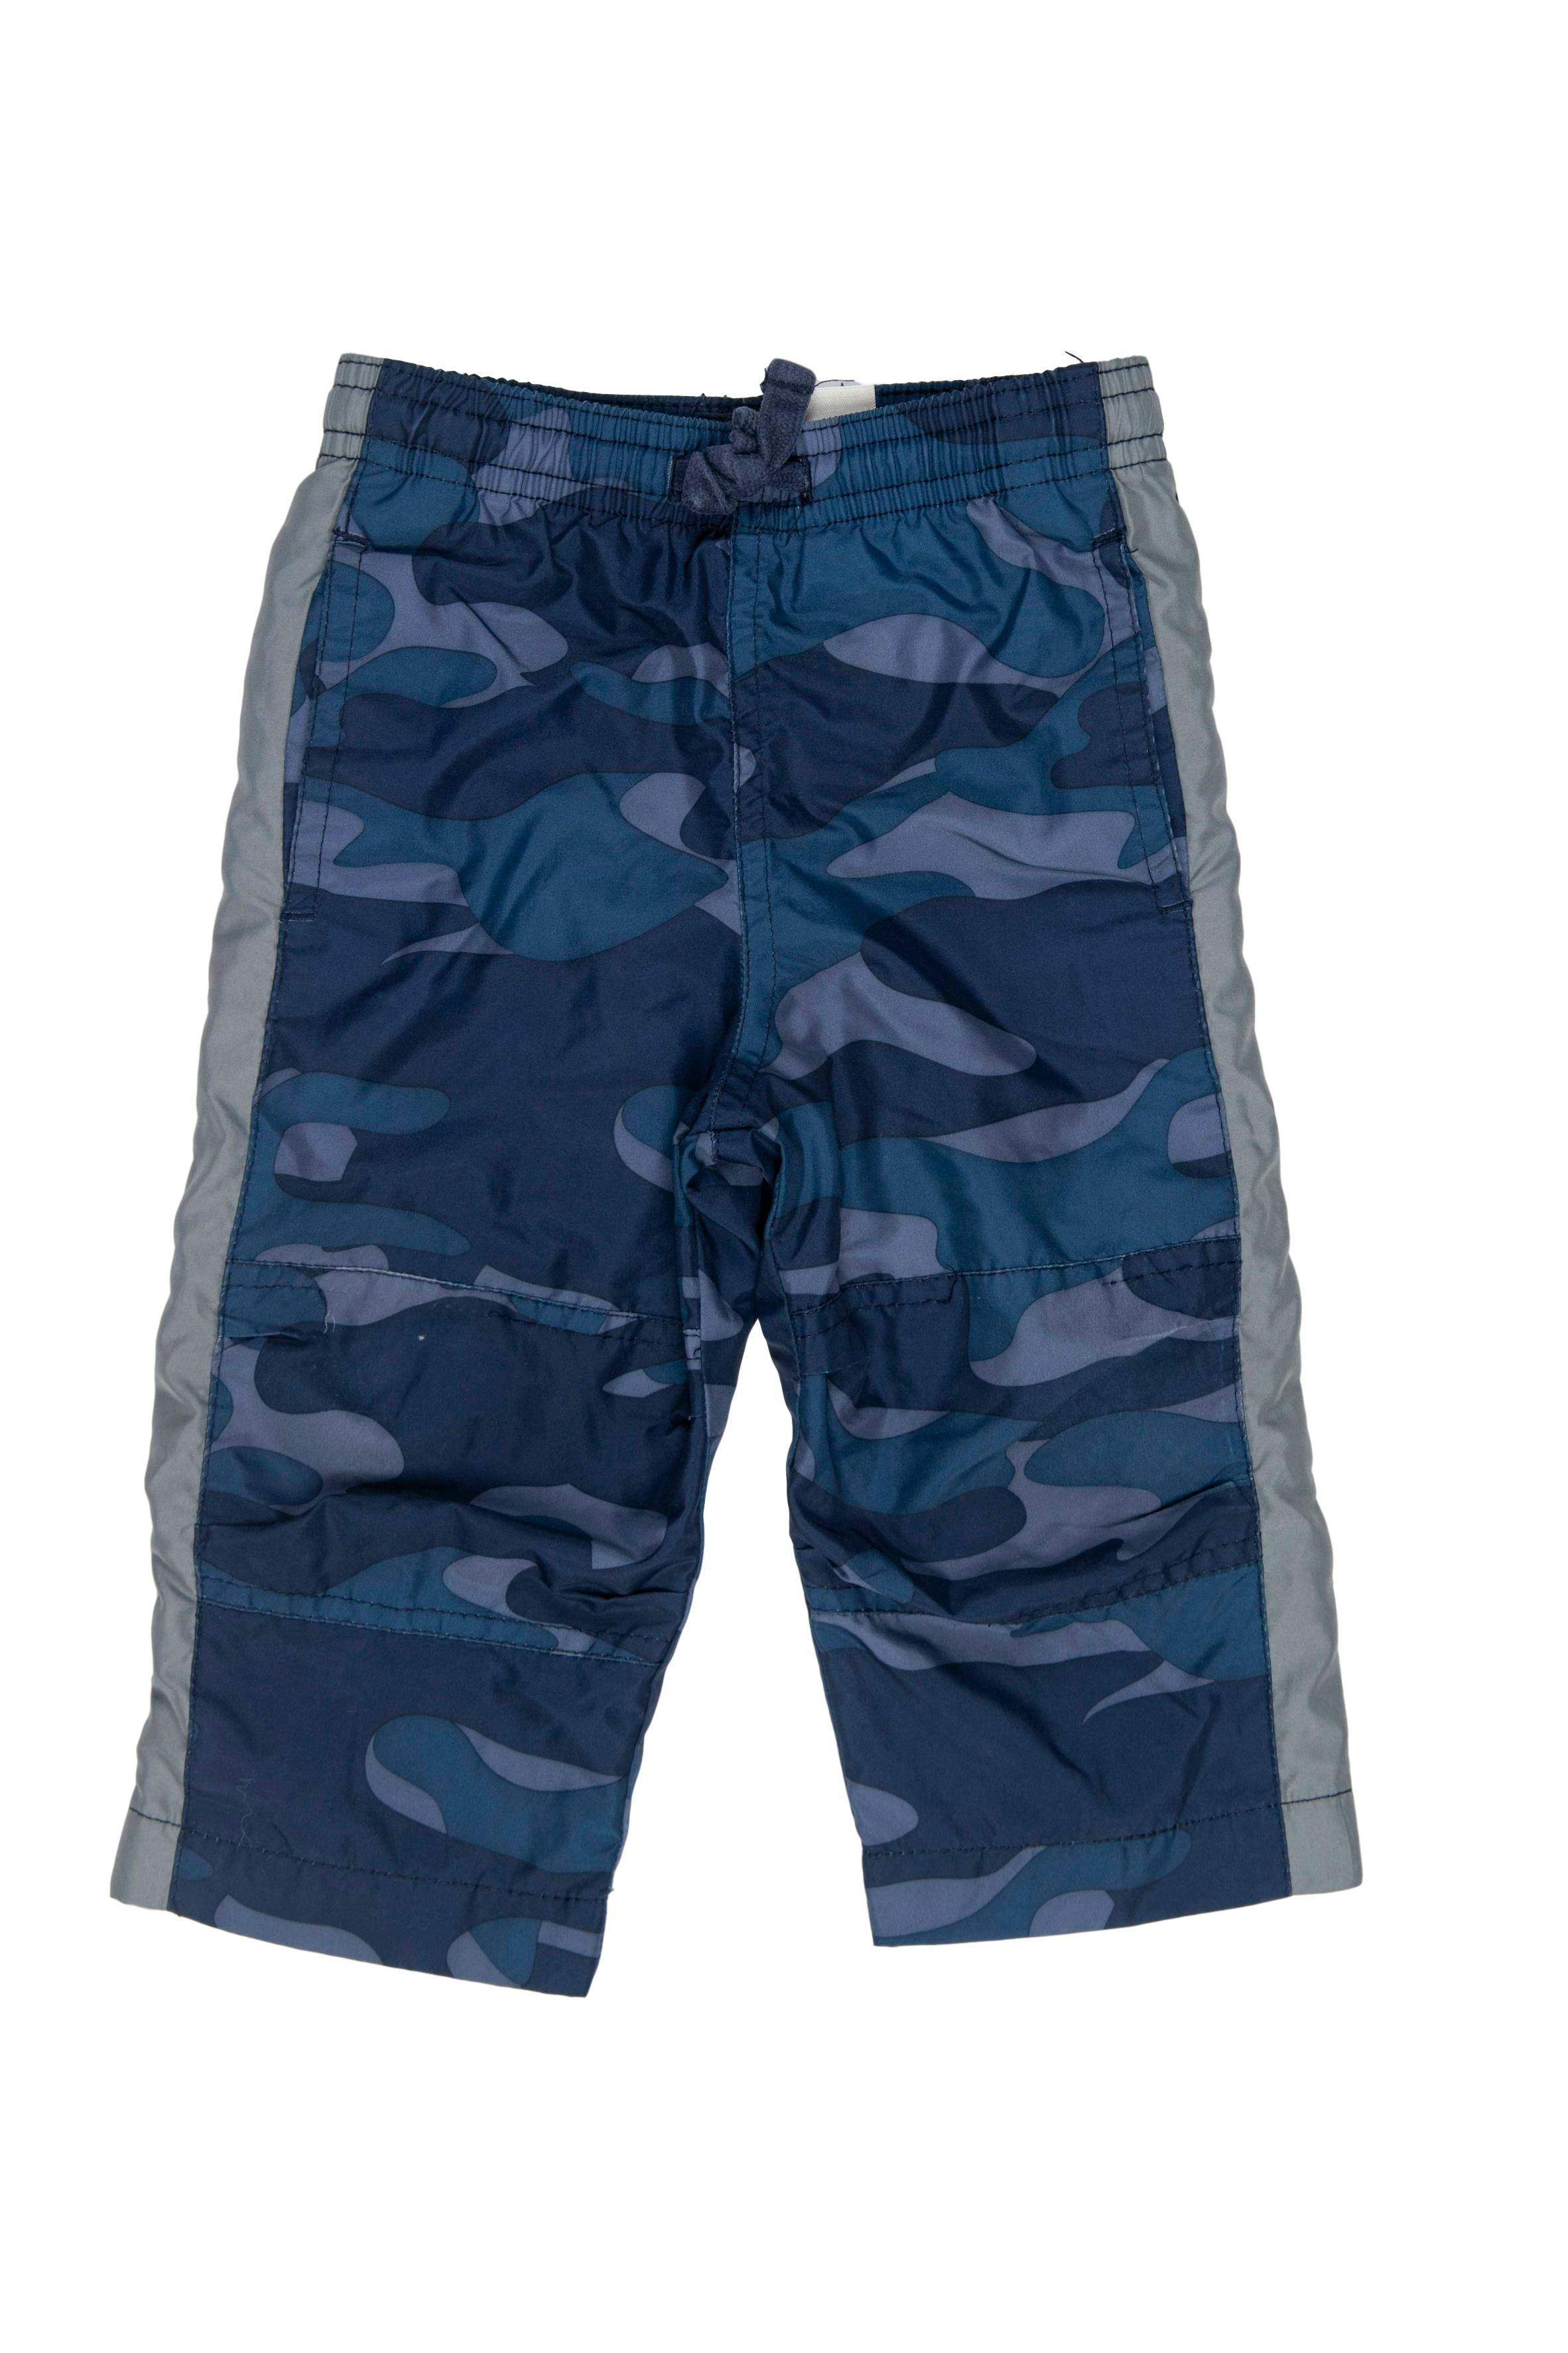 Pantalón buzo azul con detalles plomos, forrado, elástico enla cintura, cierre en las bastas - Nike